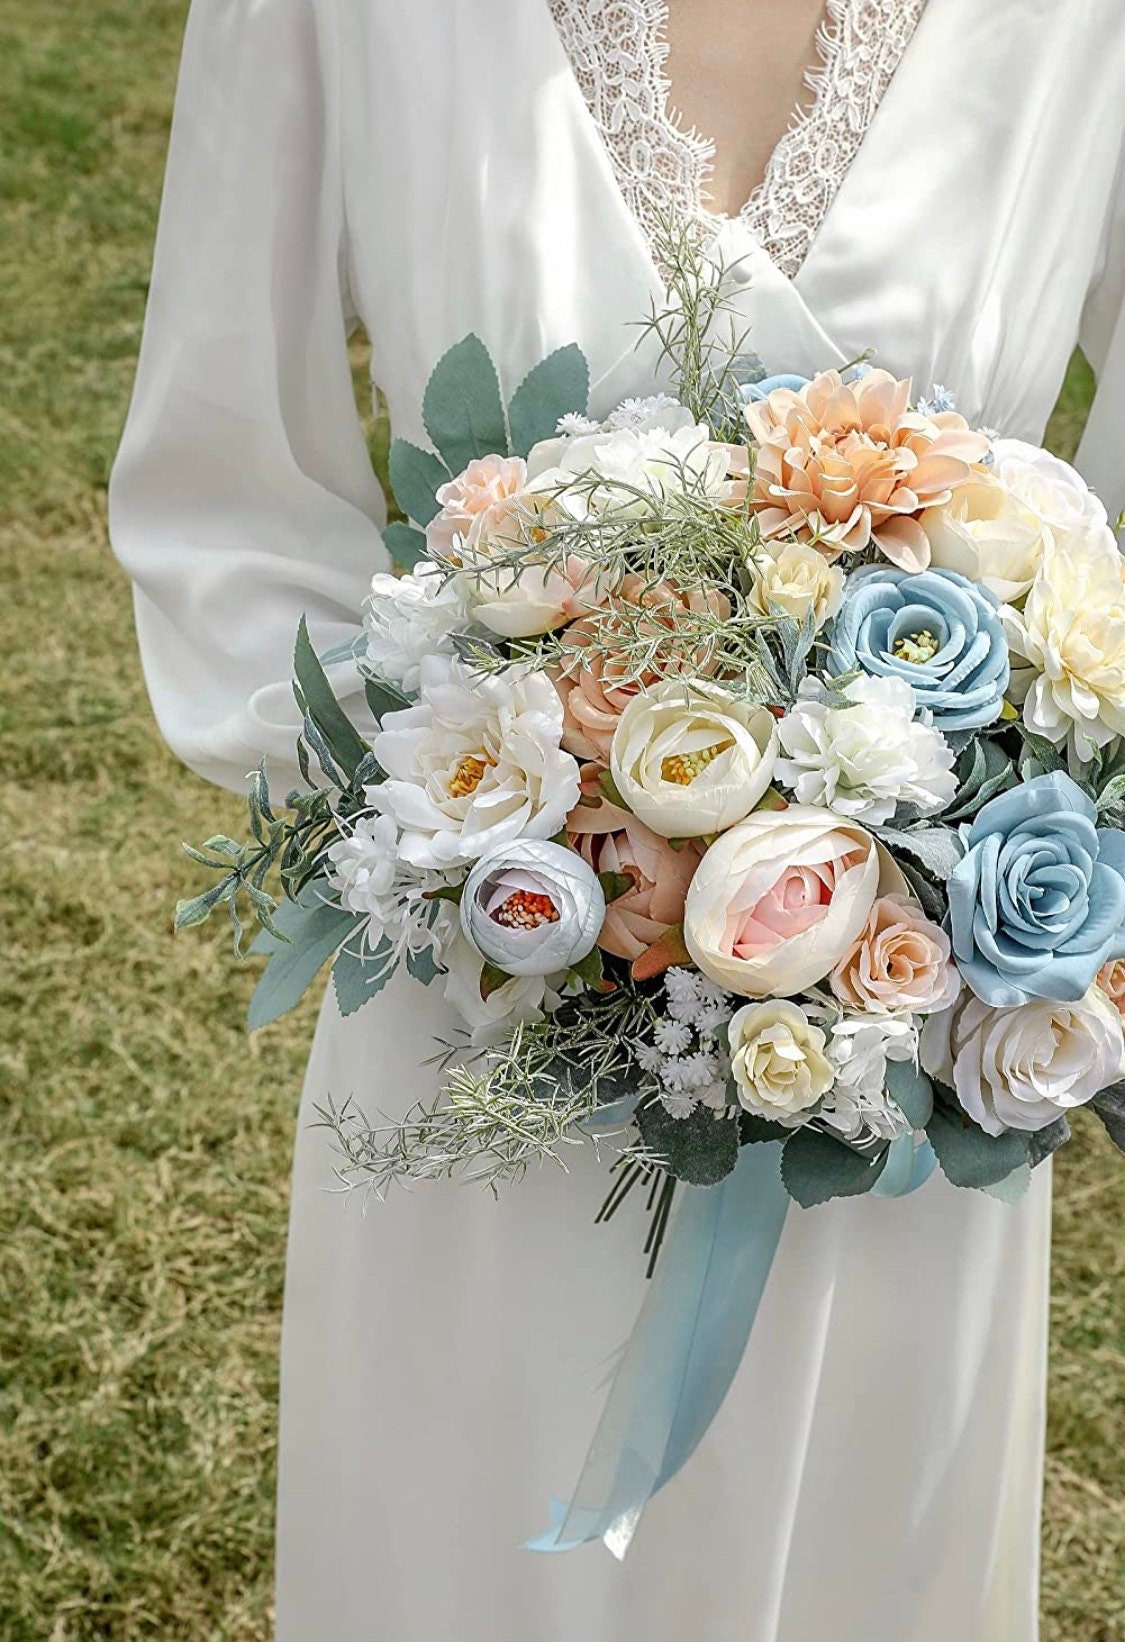 Silk Flowers - Bridal Bouquet Flowers - Great for Wedding Bouquet Decor Centerpieces Bridal Shower Party Decoration